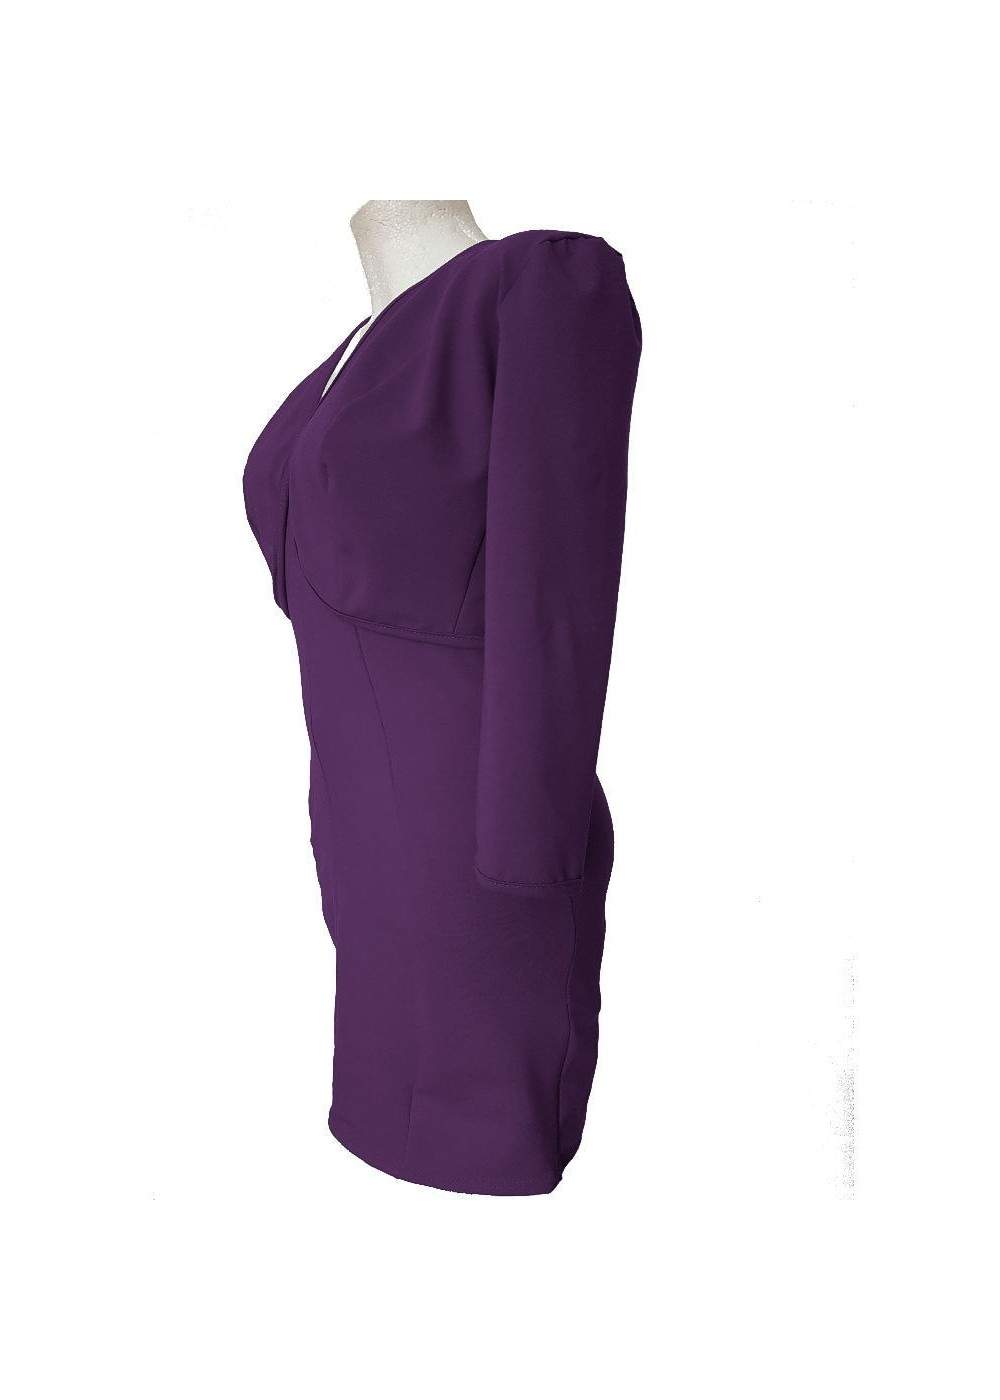 Chaqueta corta violeta y vestido de cóctel de algodón elástico - Deutsche Produktion